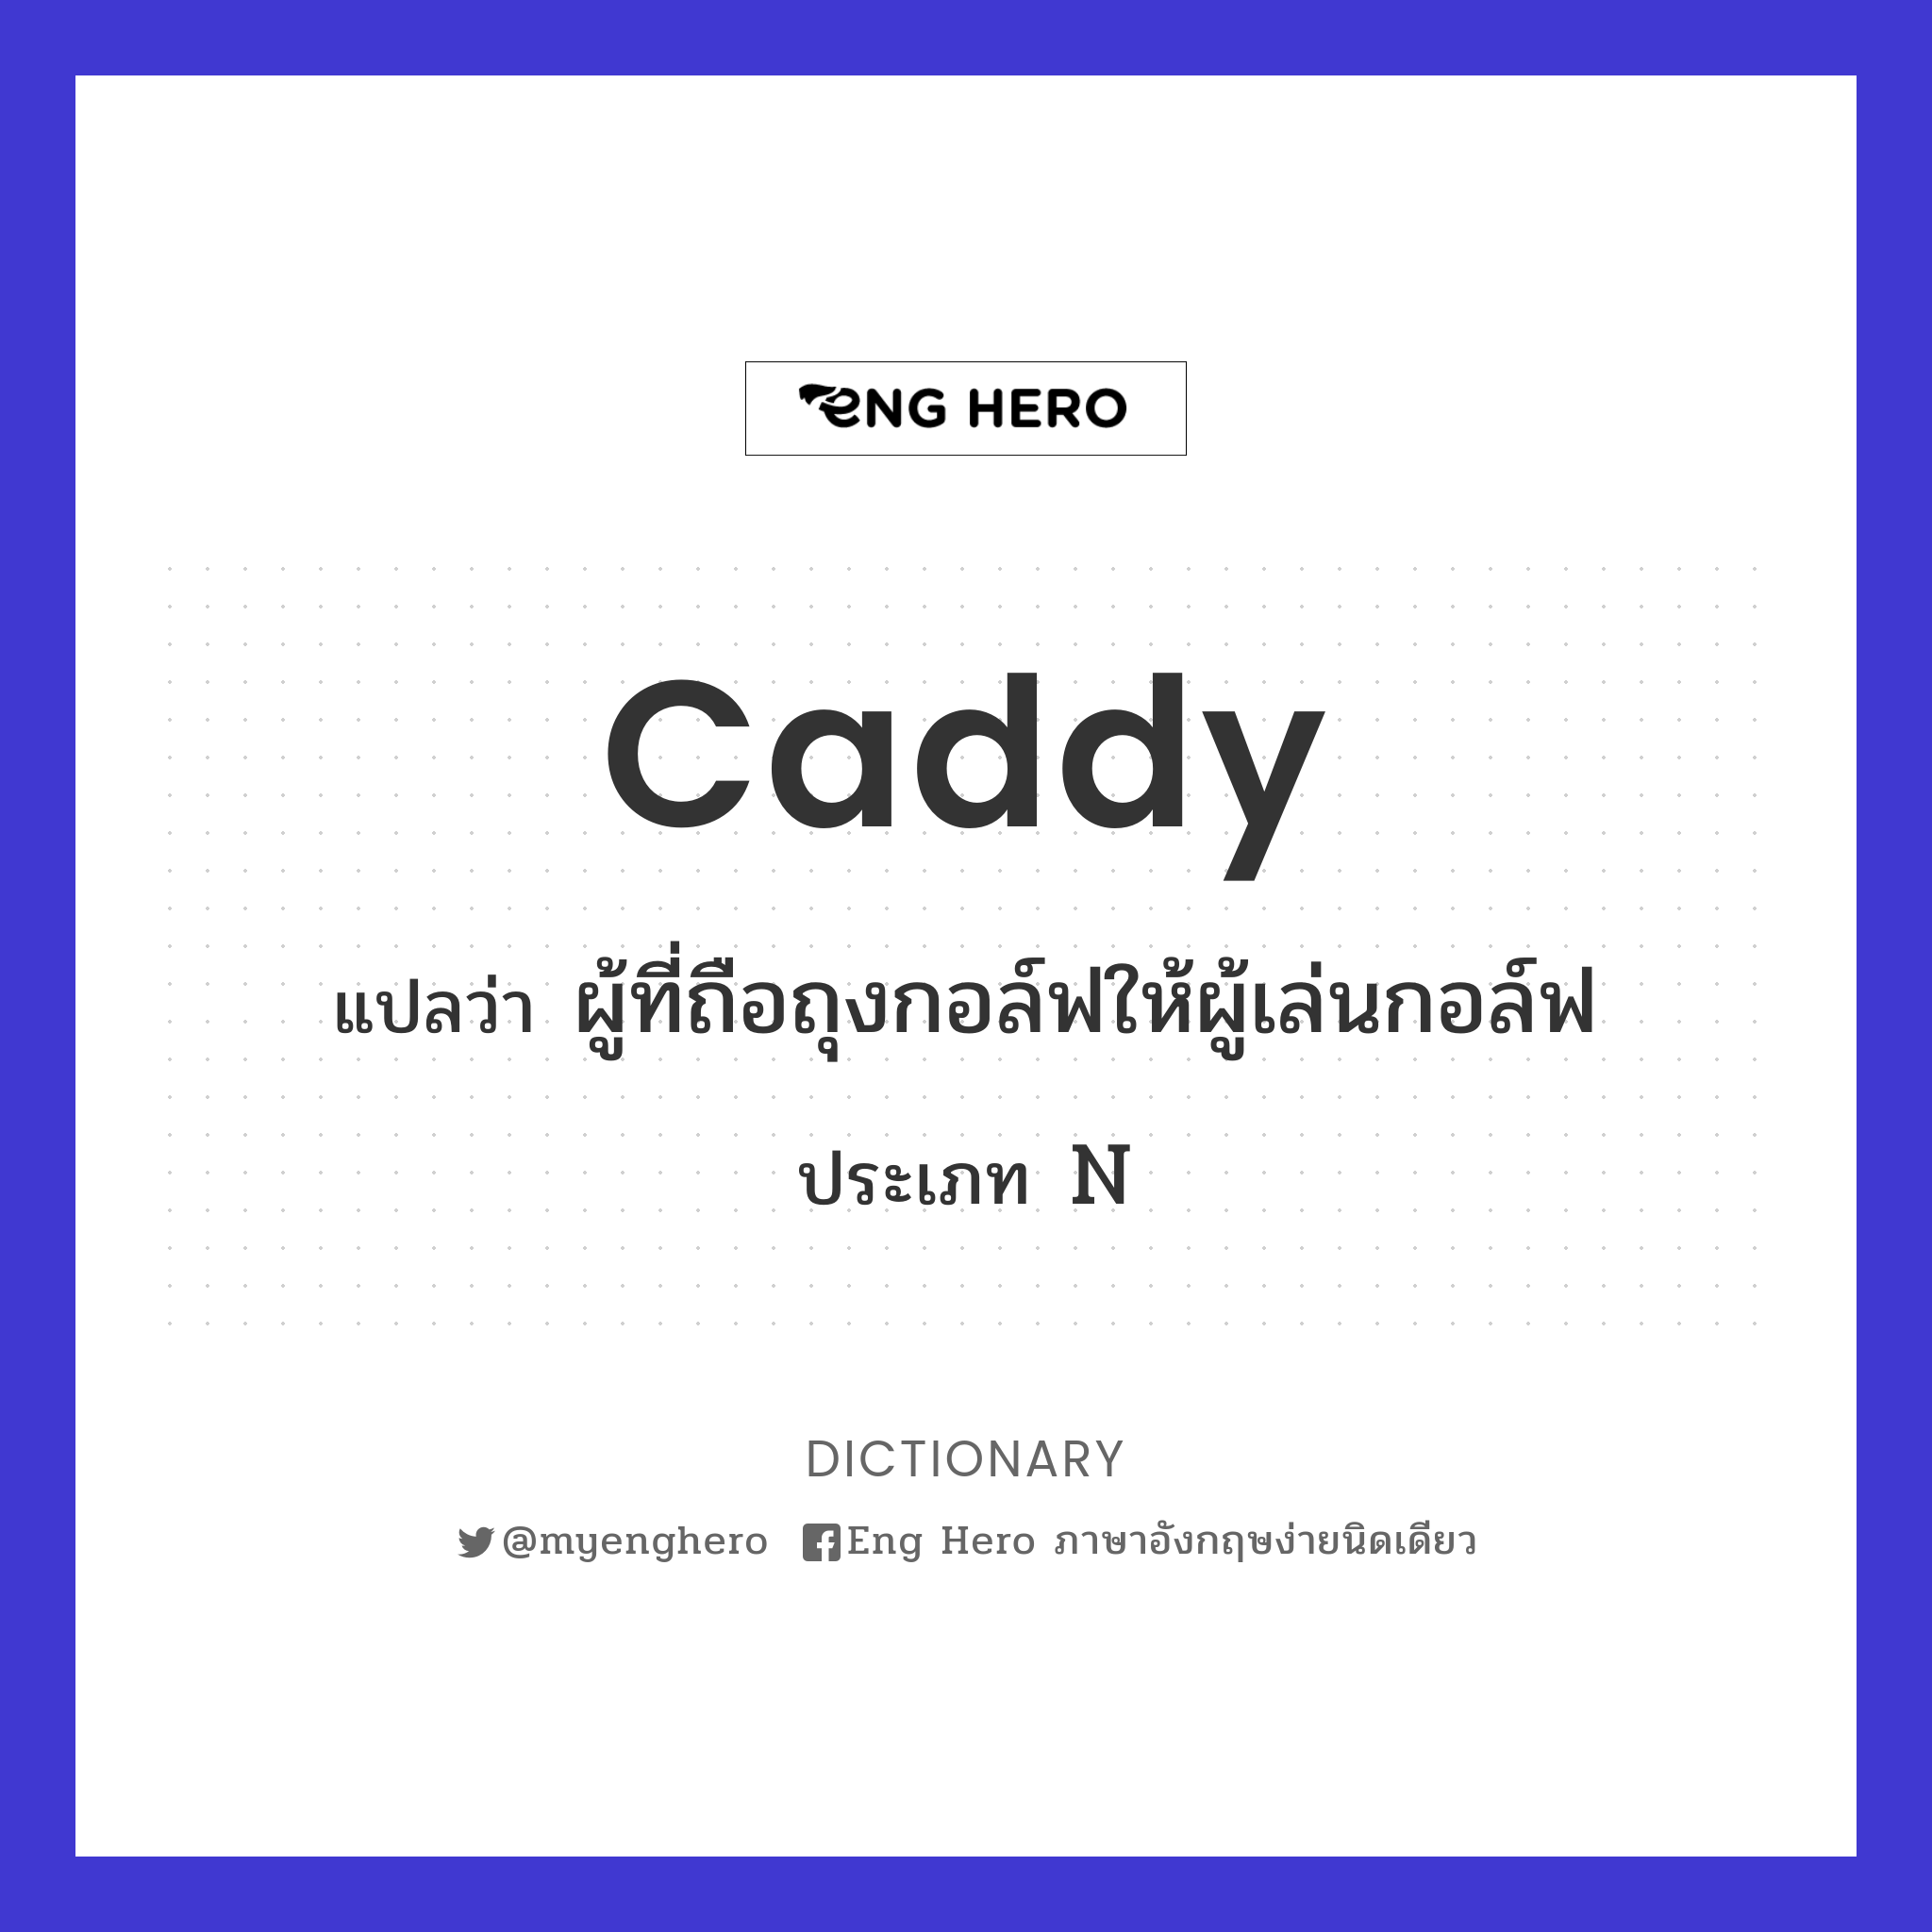 caddy